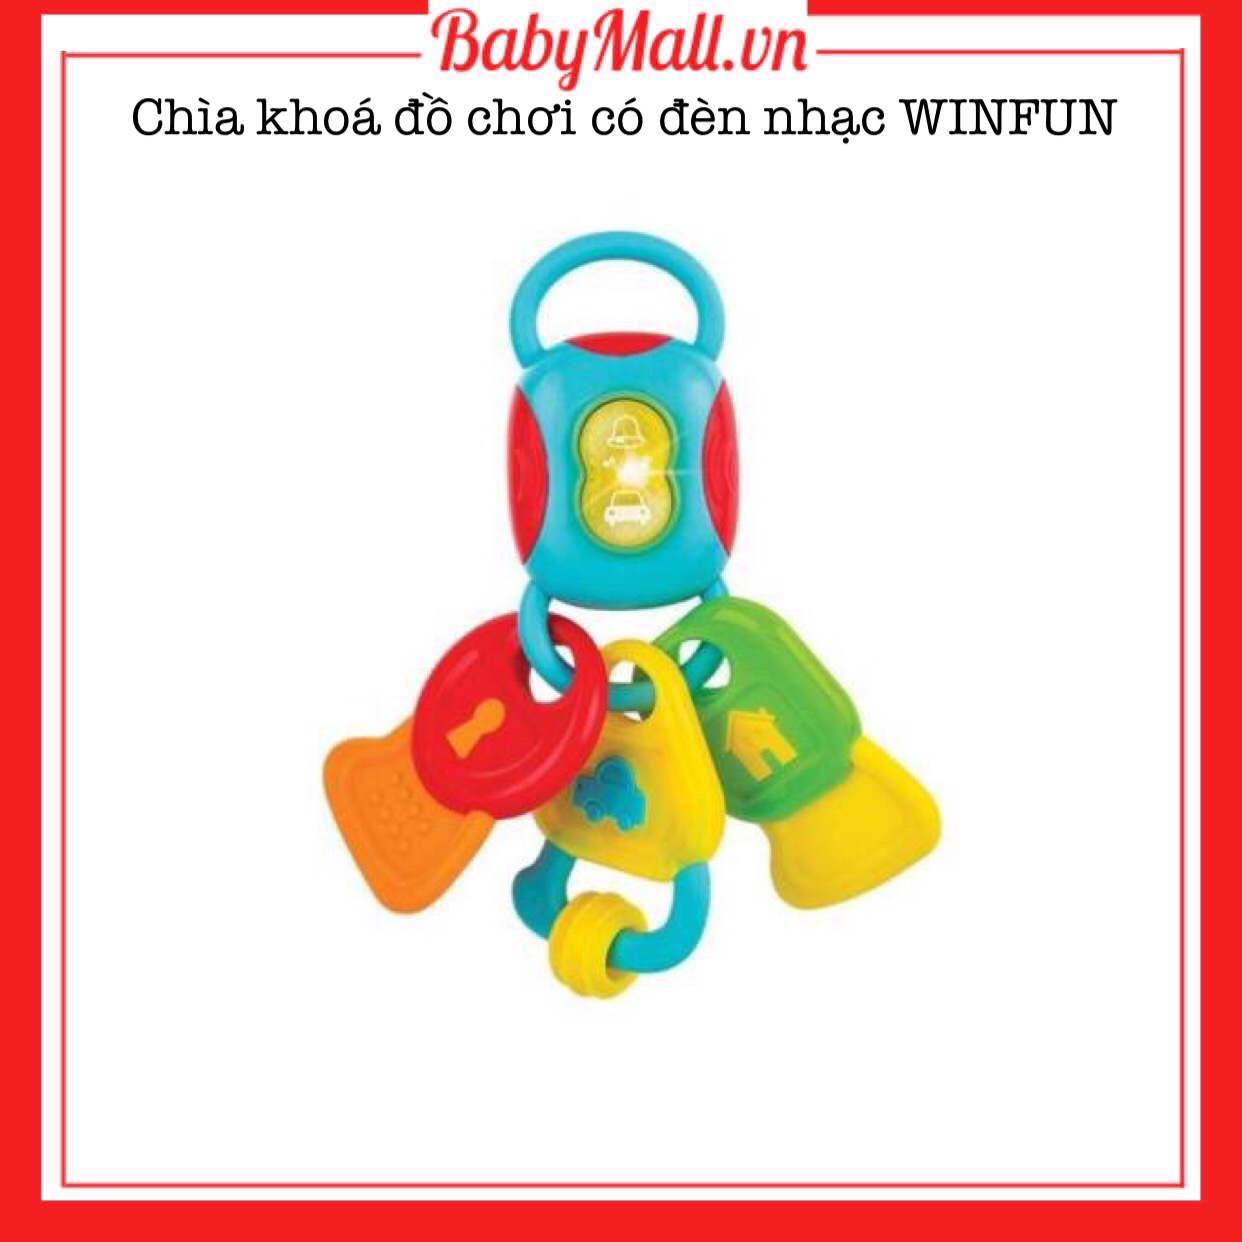 Chìa khóa đồ chơi có đèn nhạc WINFUN Babymall.vn